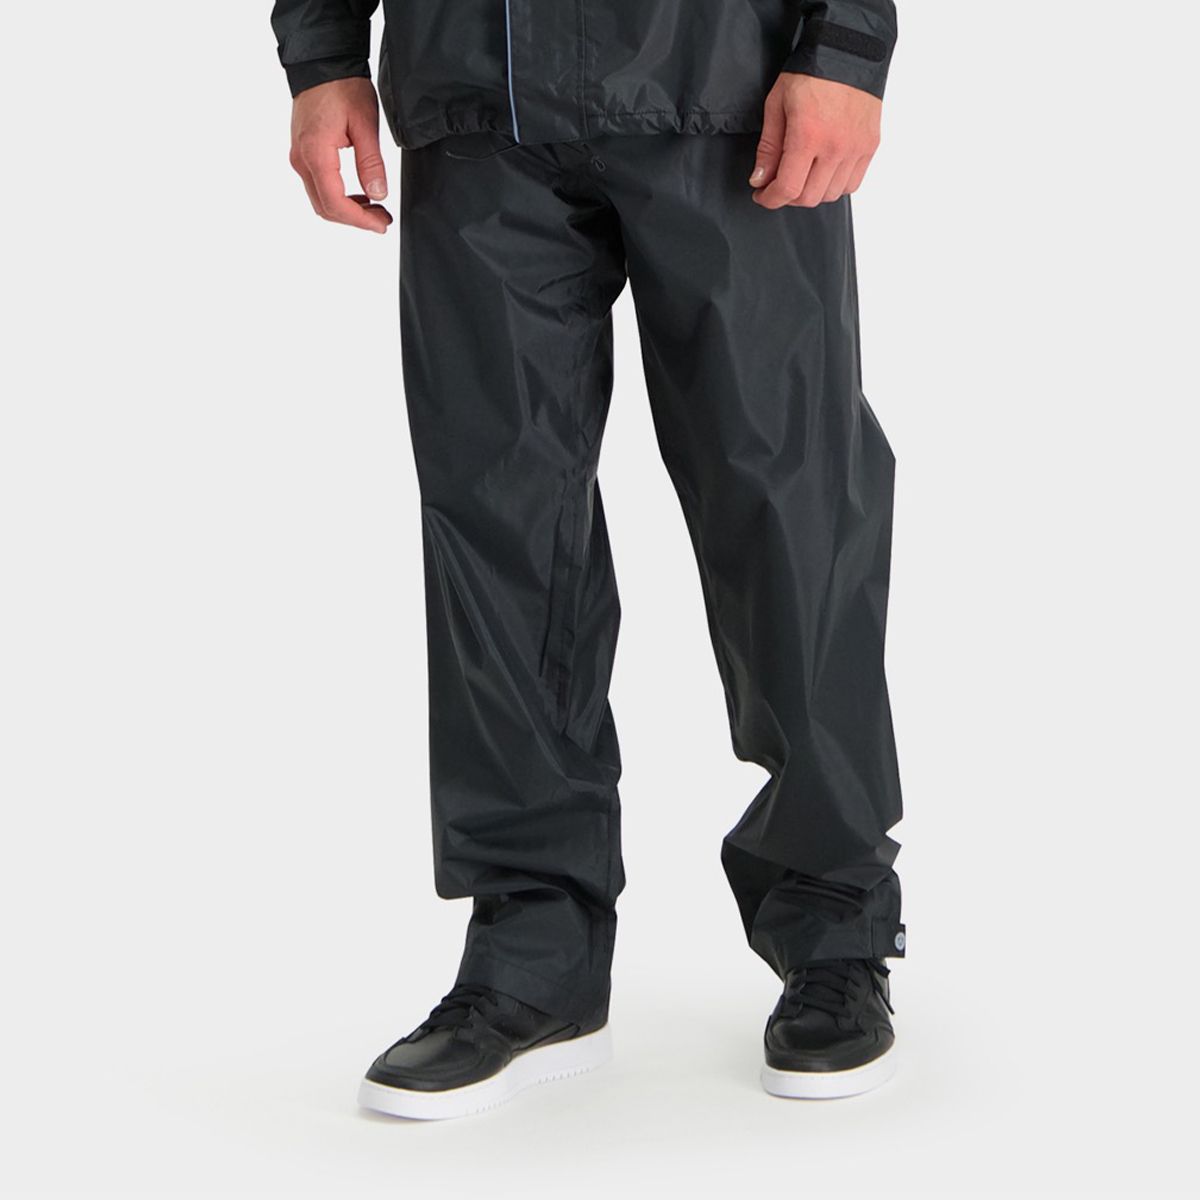 Passat Pantalones de lluvia Essential fit example